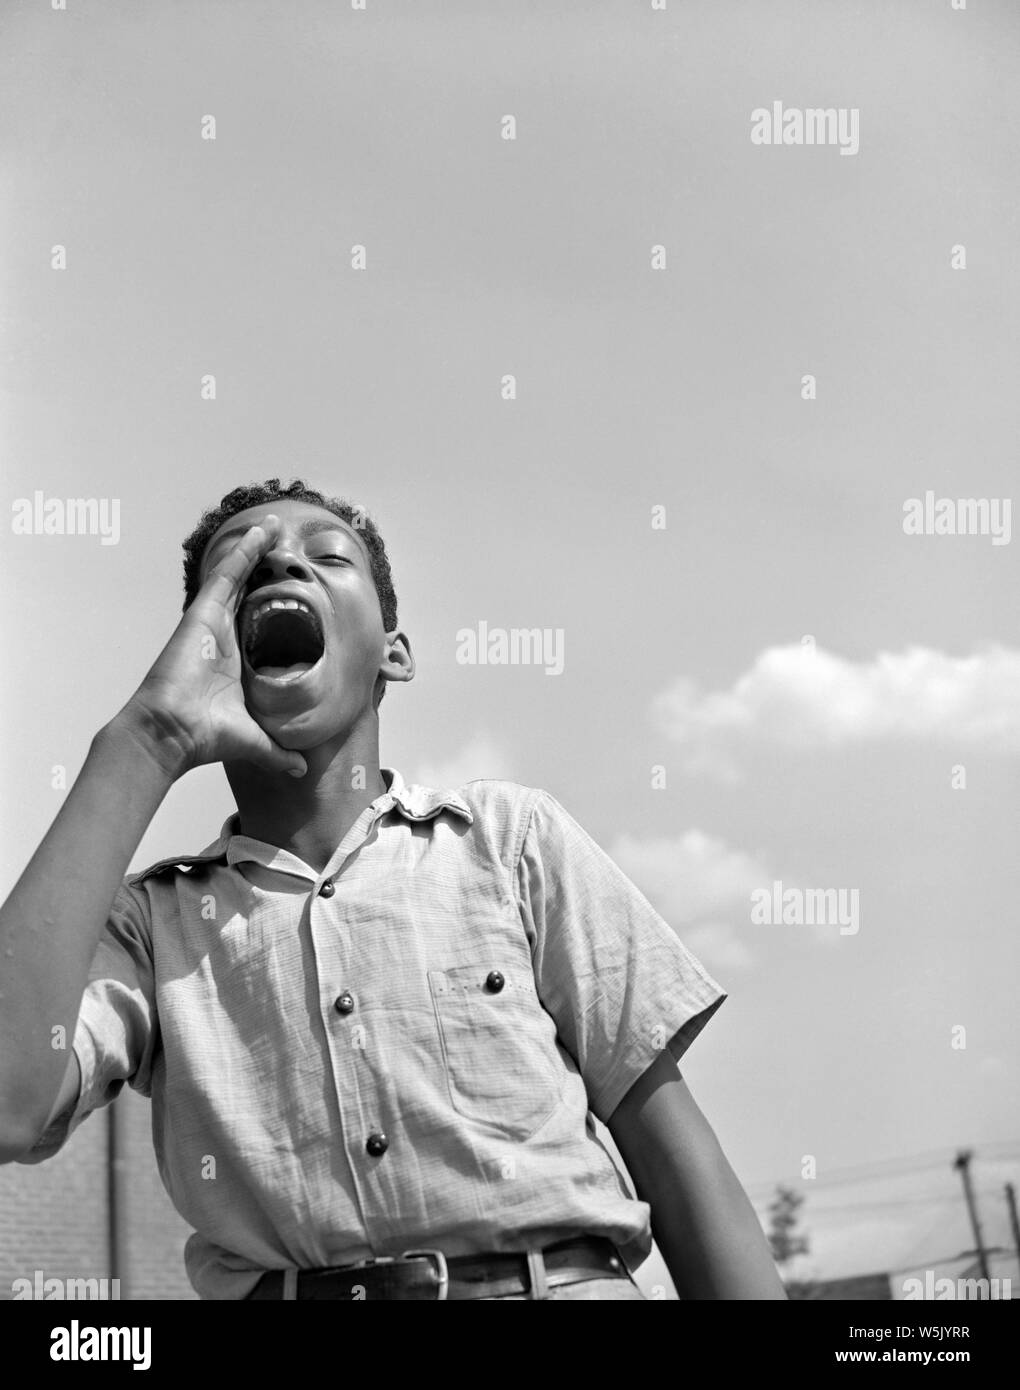 Teen Garçon crier à des amis à l'aire de jeux, Projet de logement de Frederick Douglass, Quartier Anacostia, Washington DC, USA, photo de Gordon Parks, Juin 1942 Banque D'Images